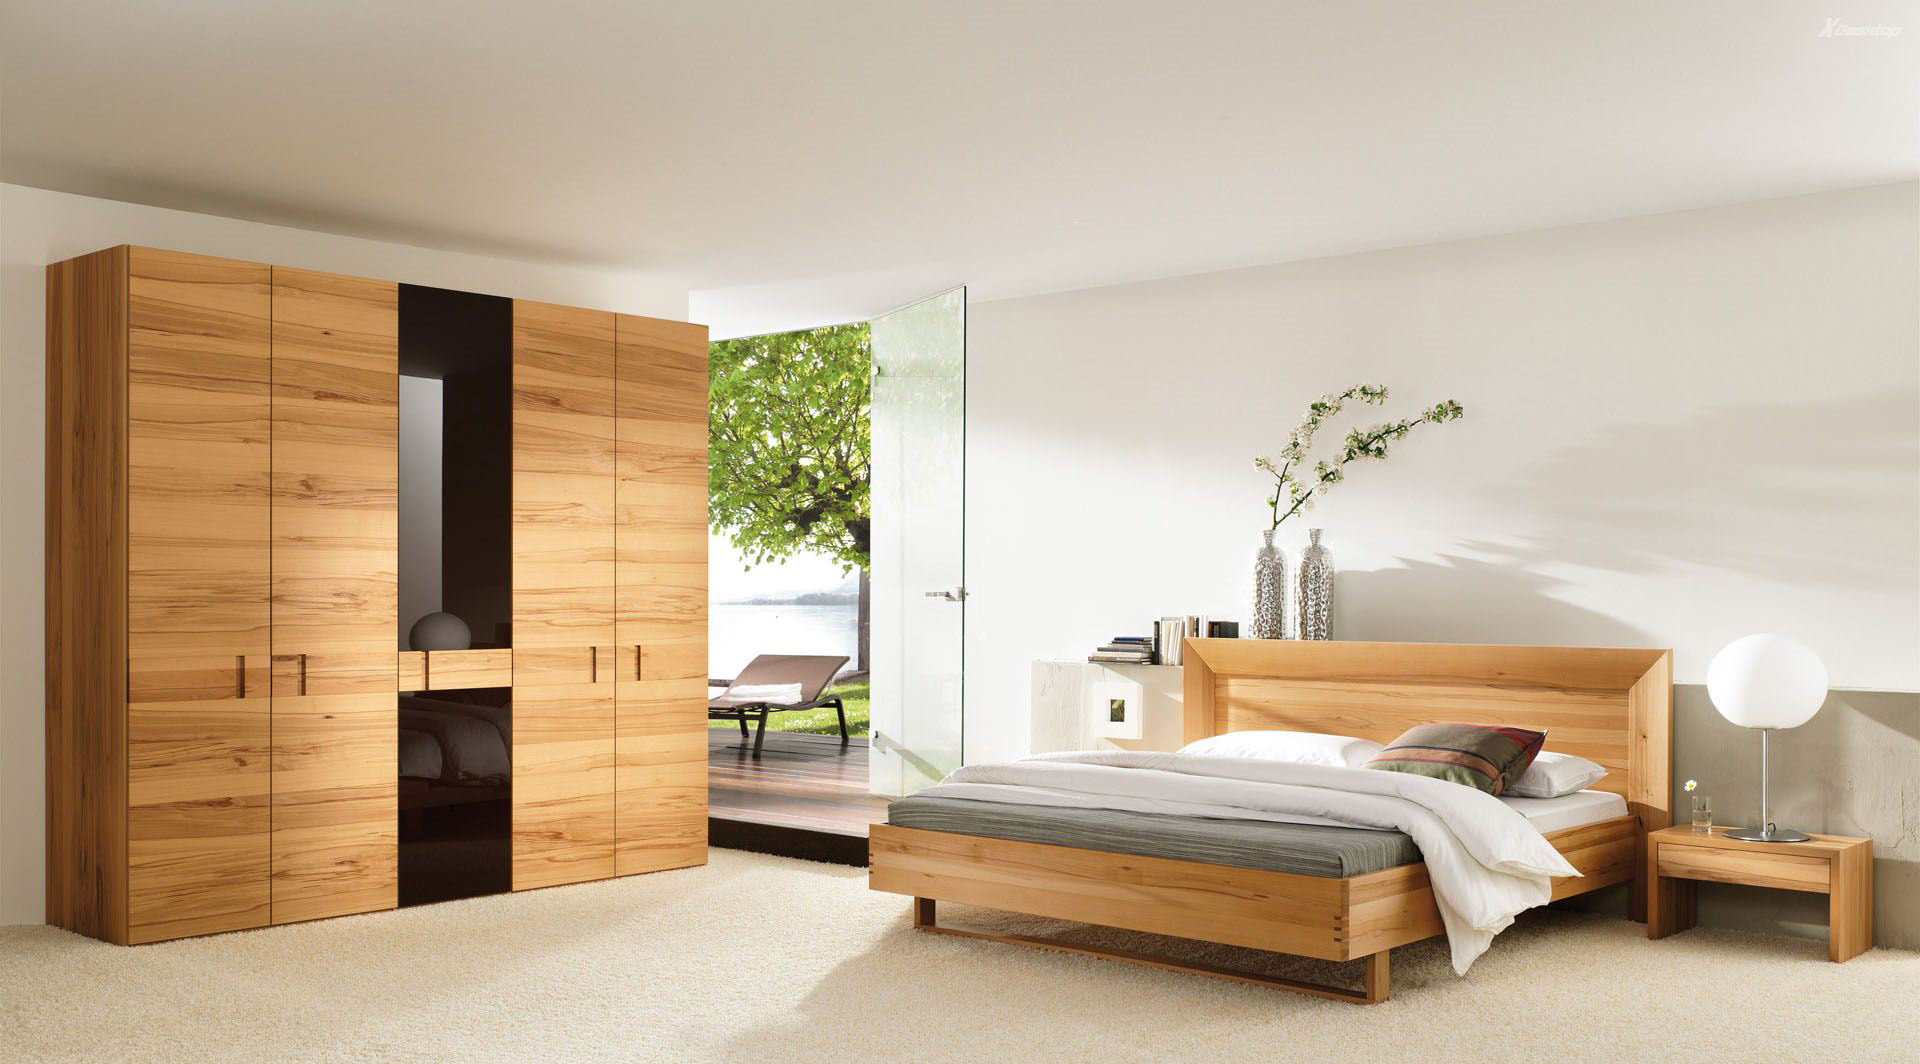 Wooden Simple Bedroom Design - HD Wallpaper 